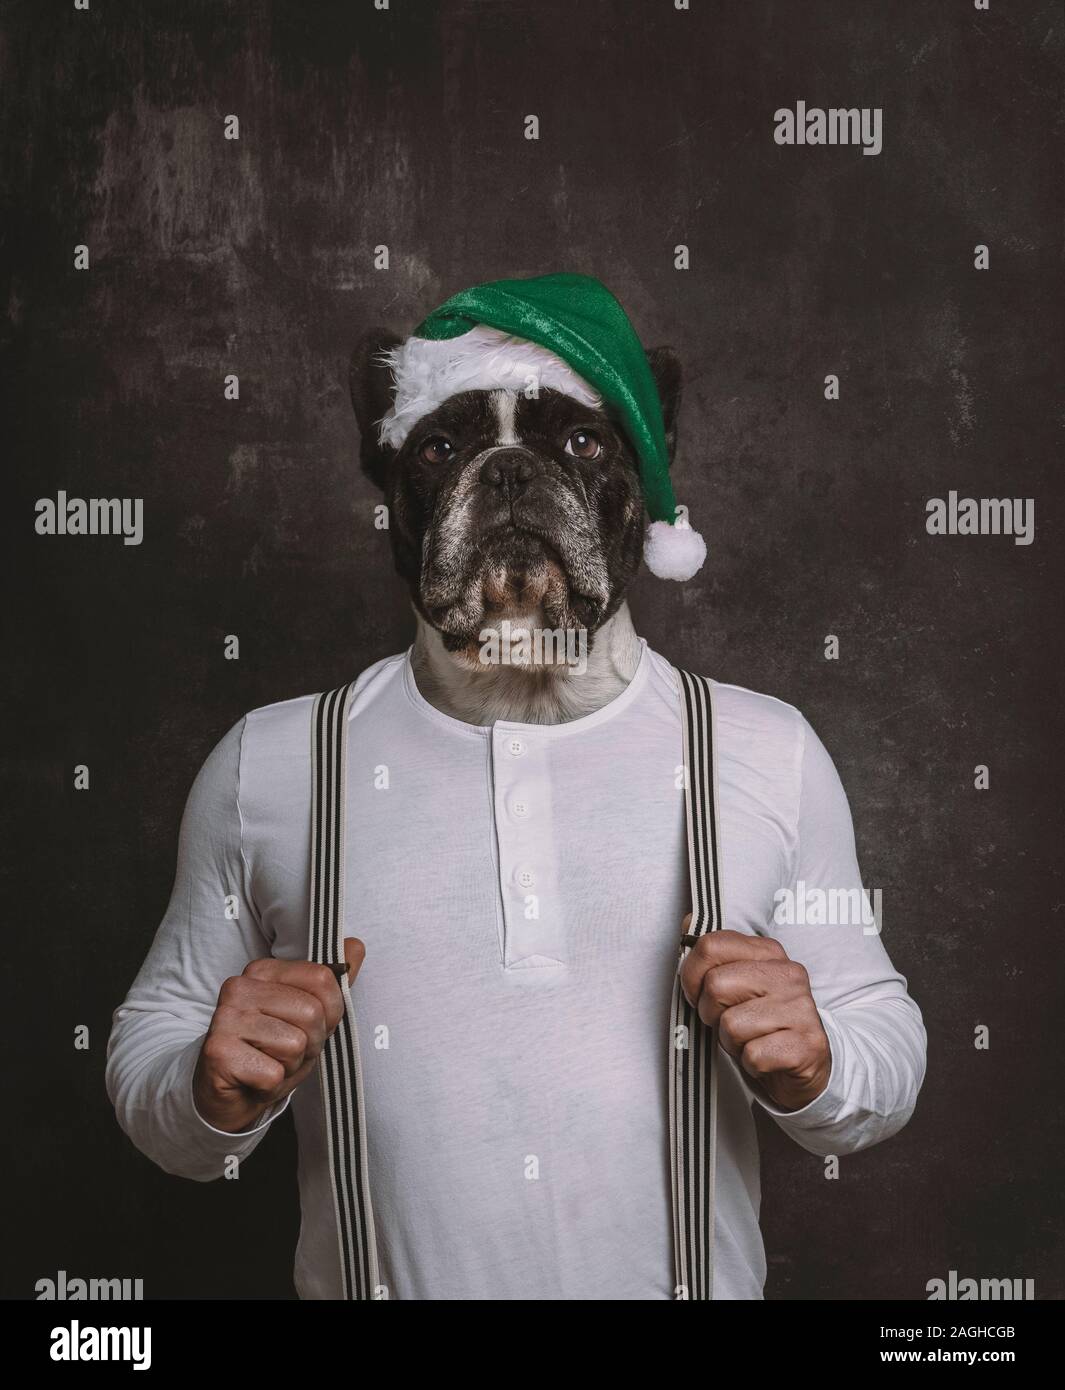 Bulldog francese cane ritratto di testa con verde di Natale hat sul corpo di un uomo con bretelle. Surrealismo concetto di Natale. Foto Stock